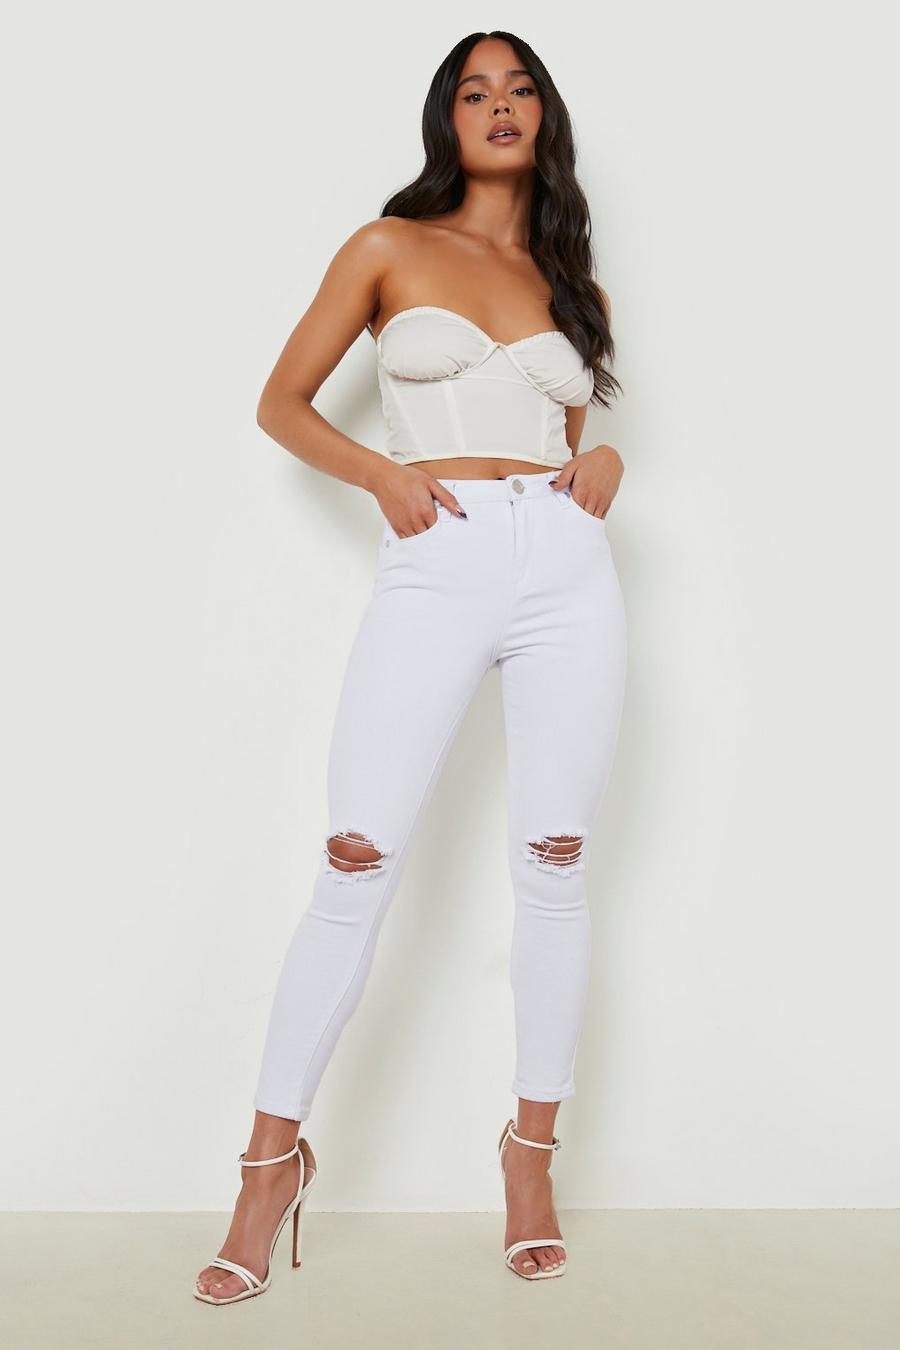 לבן white סקיני ג'ינס מבד ממוחזר עם קרעים, פטיט